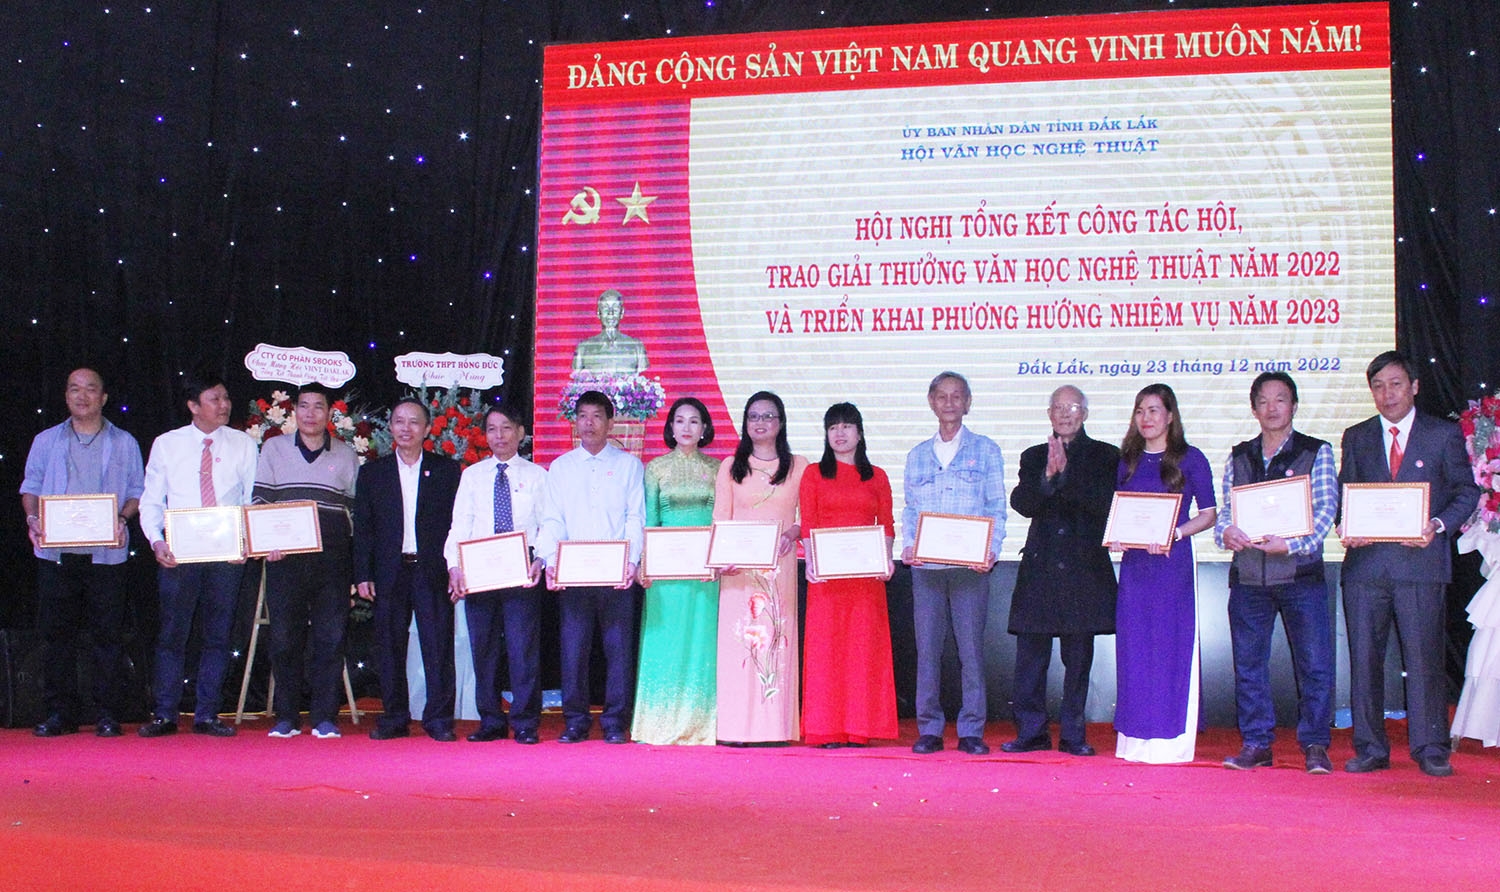 Trao giải thưởng VHNT và khen thưởng các hội viên có thành tích xuất sắc